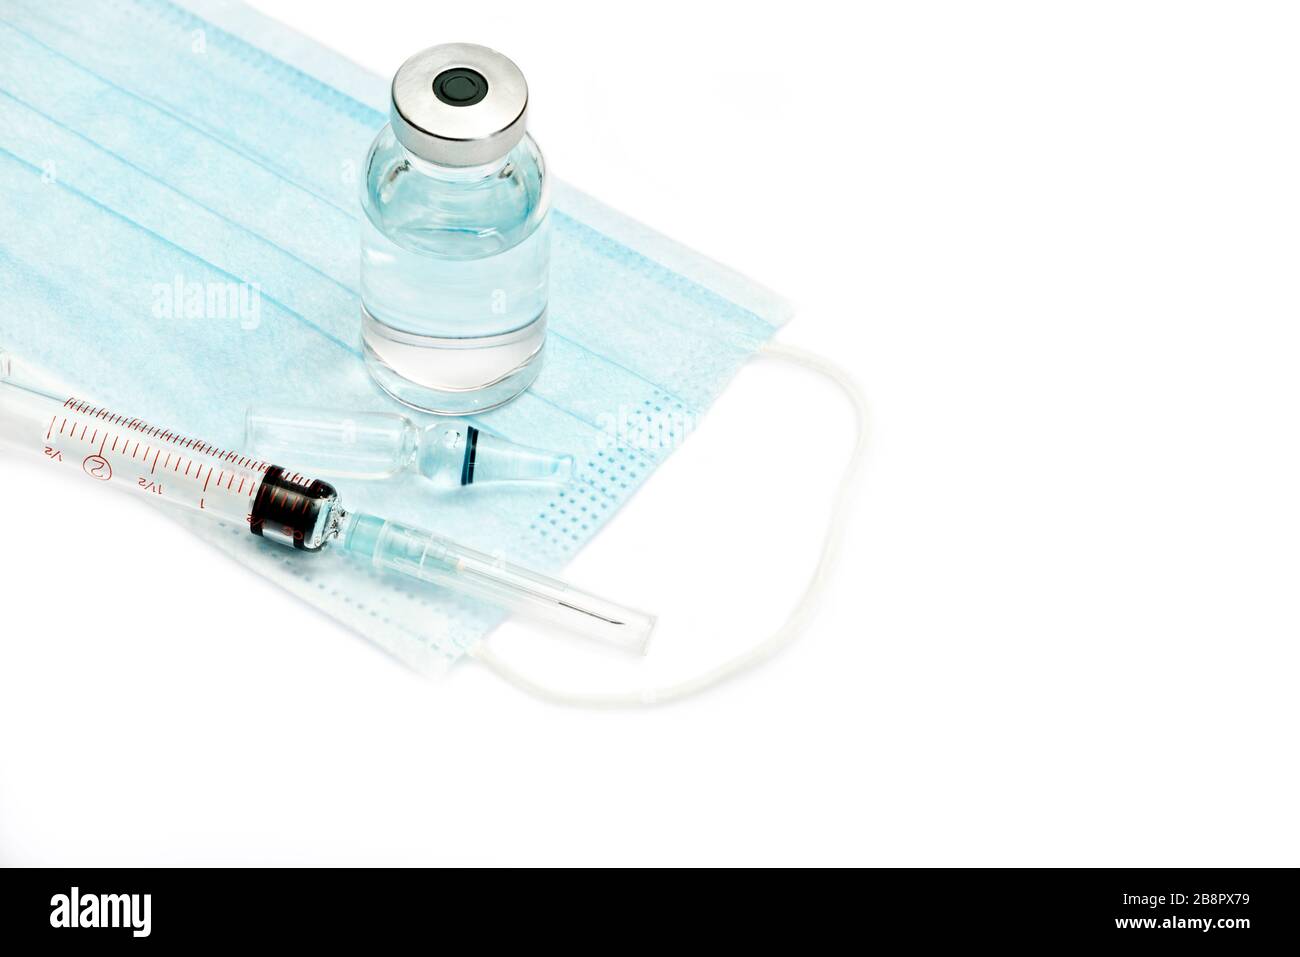 Mask, syringe, ampule and medication vial isolated on white background. Stock Photo